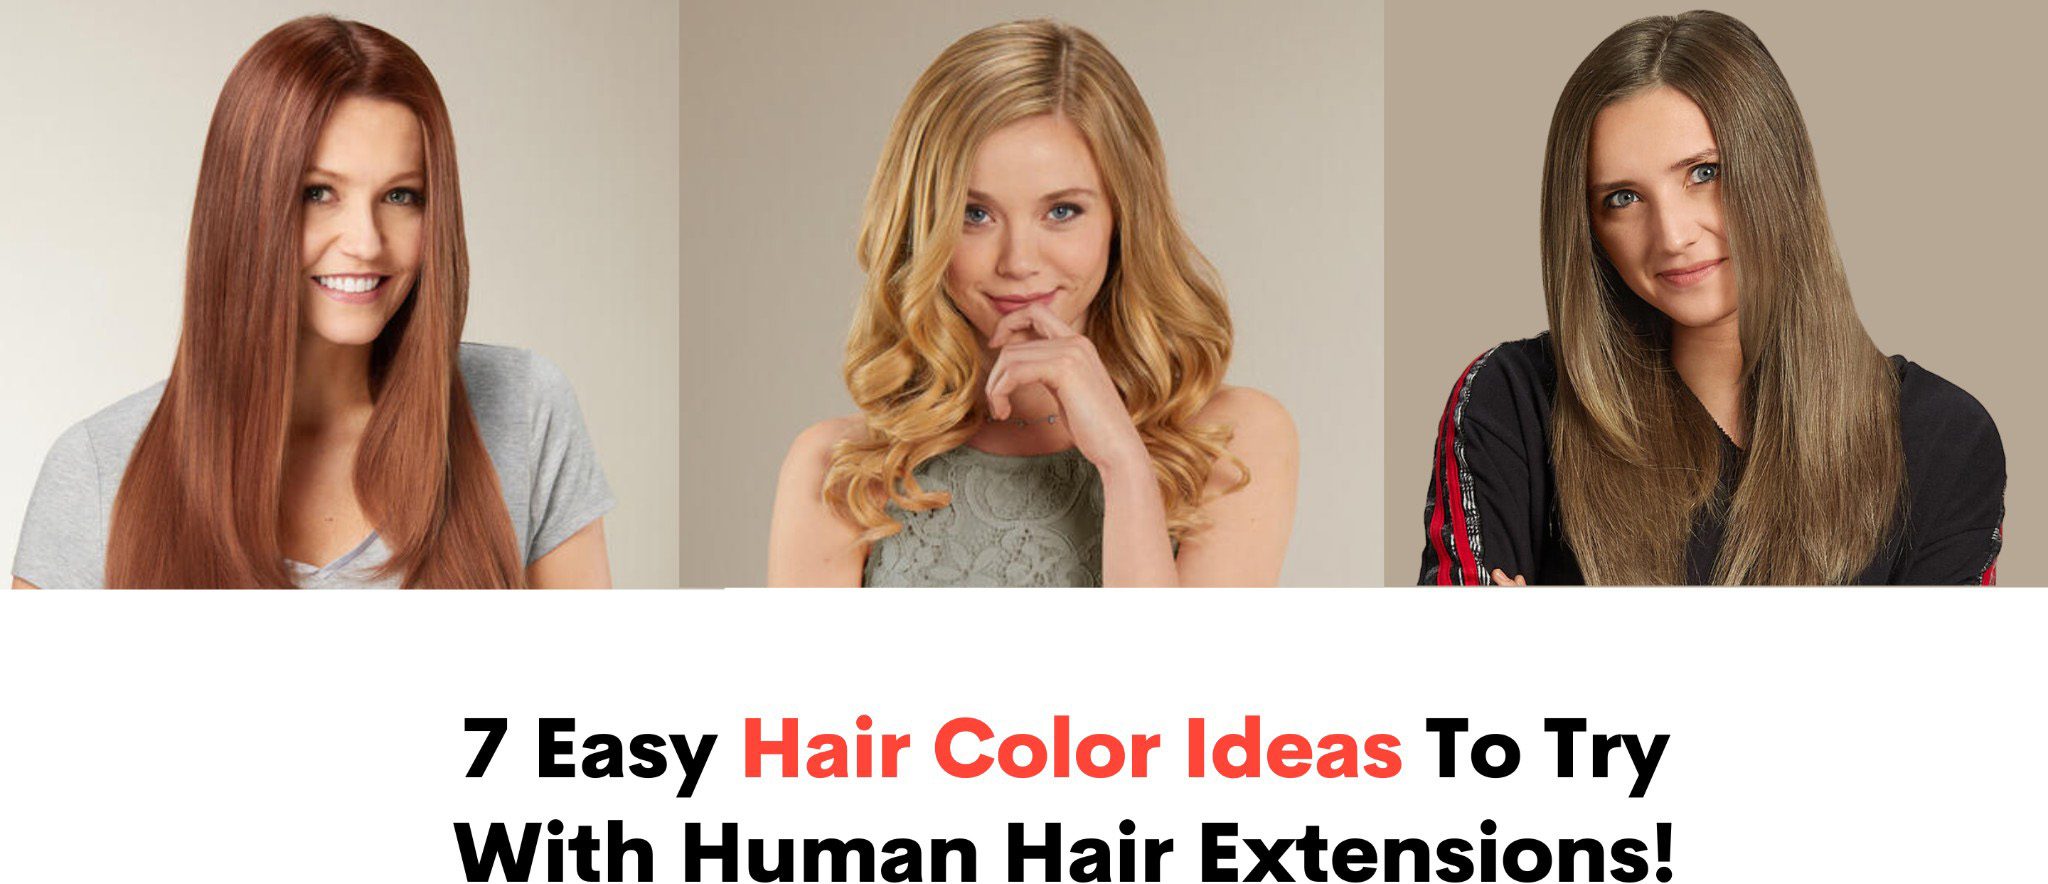 7 easy hair color ideas